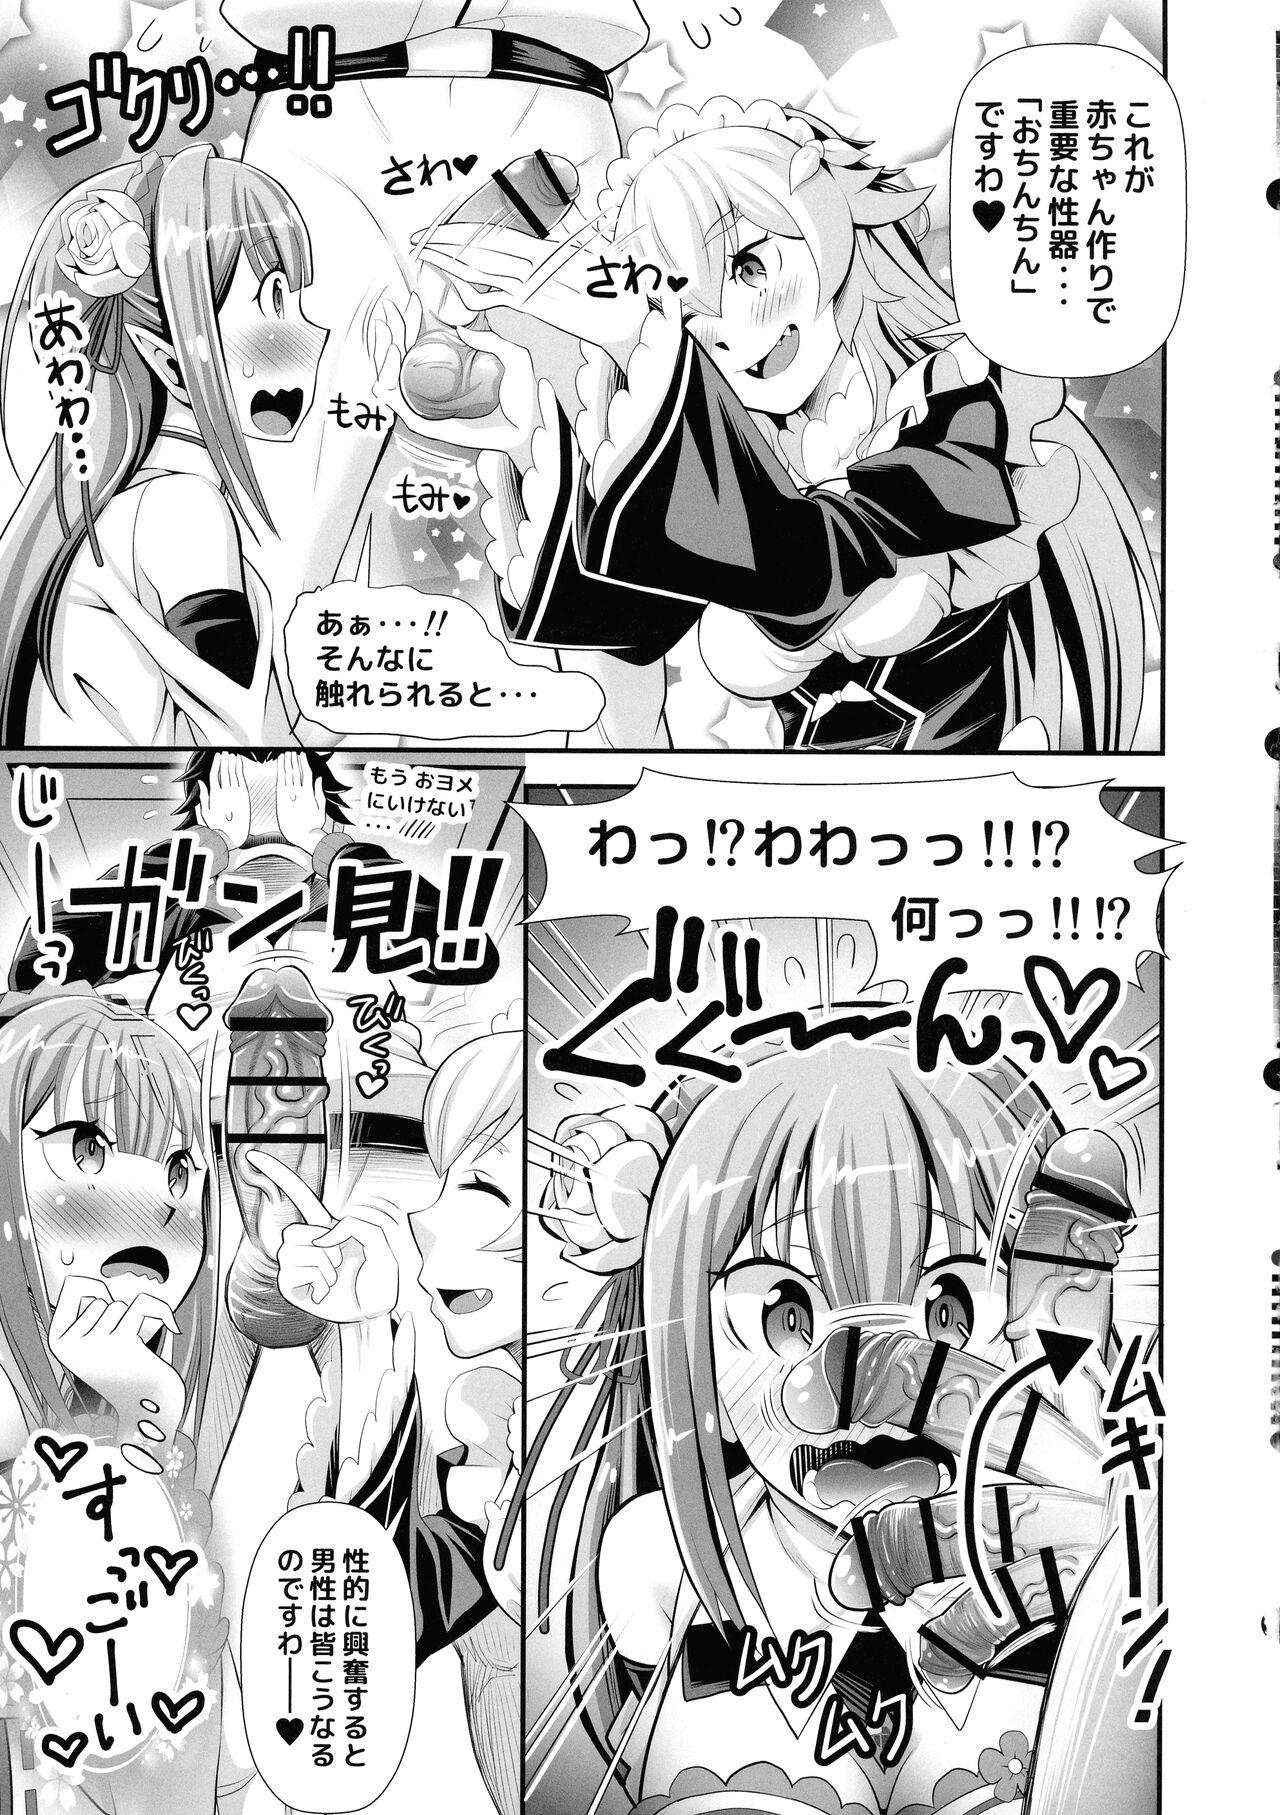 Freeporn Re: Zero na Maid-san vol. 3 - Re zero kara hajimeru isekai seikatsu Wam - Page 7